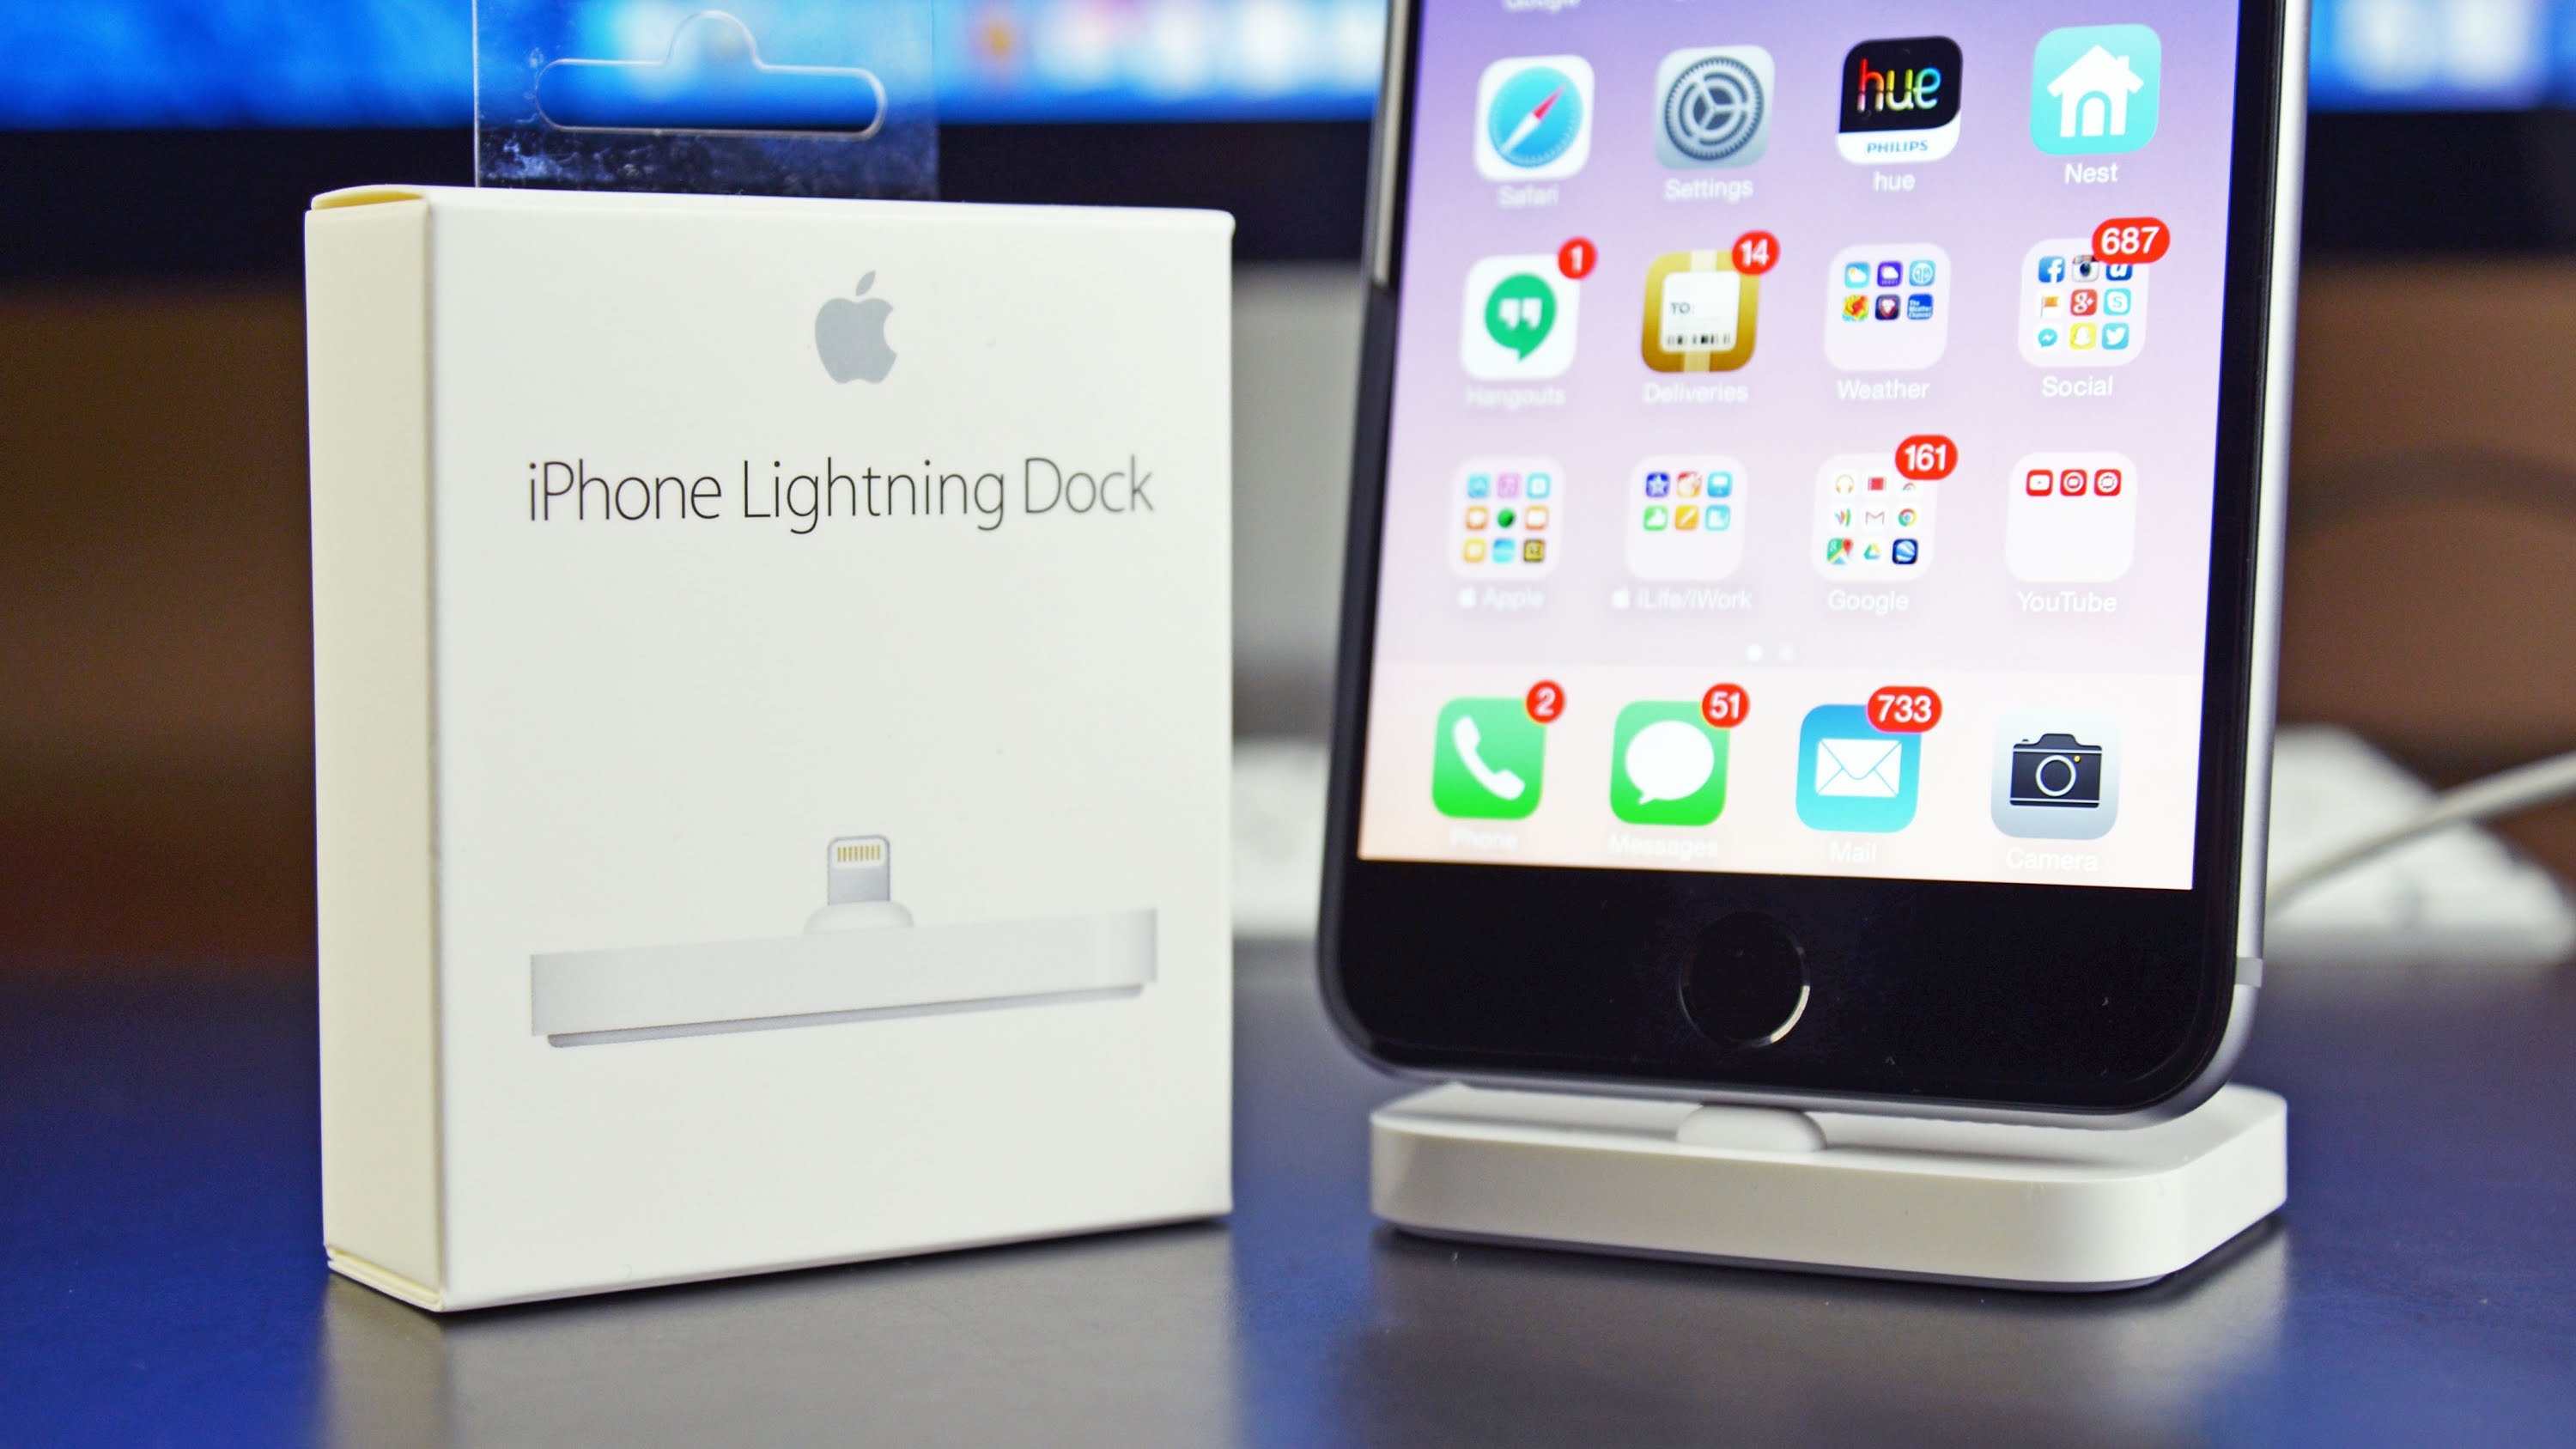 Đế Sạc Đứng Cổng Lightning Cho Iphone Apple Lightning Dock MNN62ZA/A - Hàng Chính Hãng - Đen